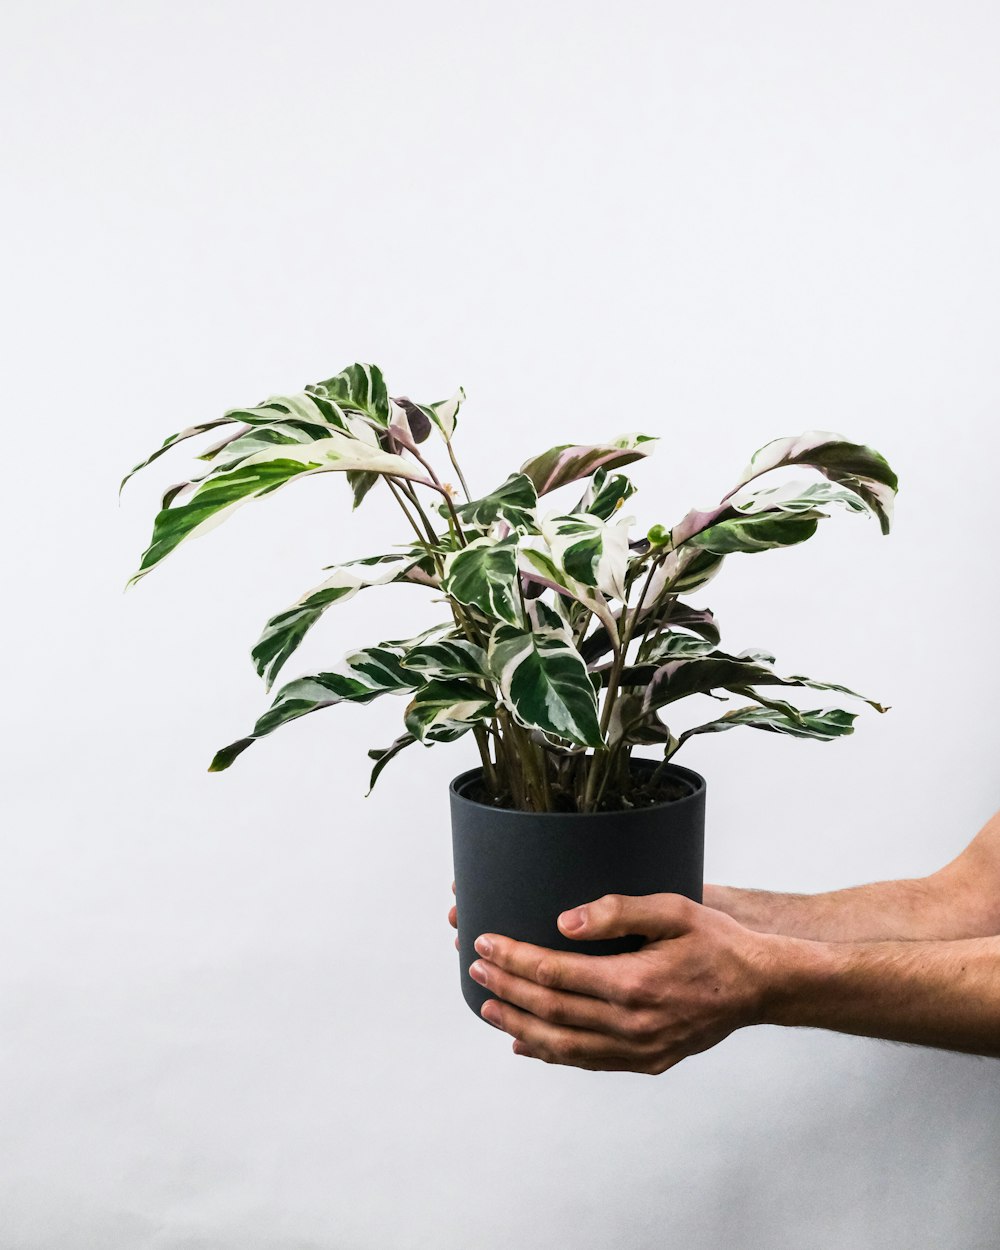 Persona sosteniendo planta verde en maceta negra